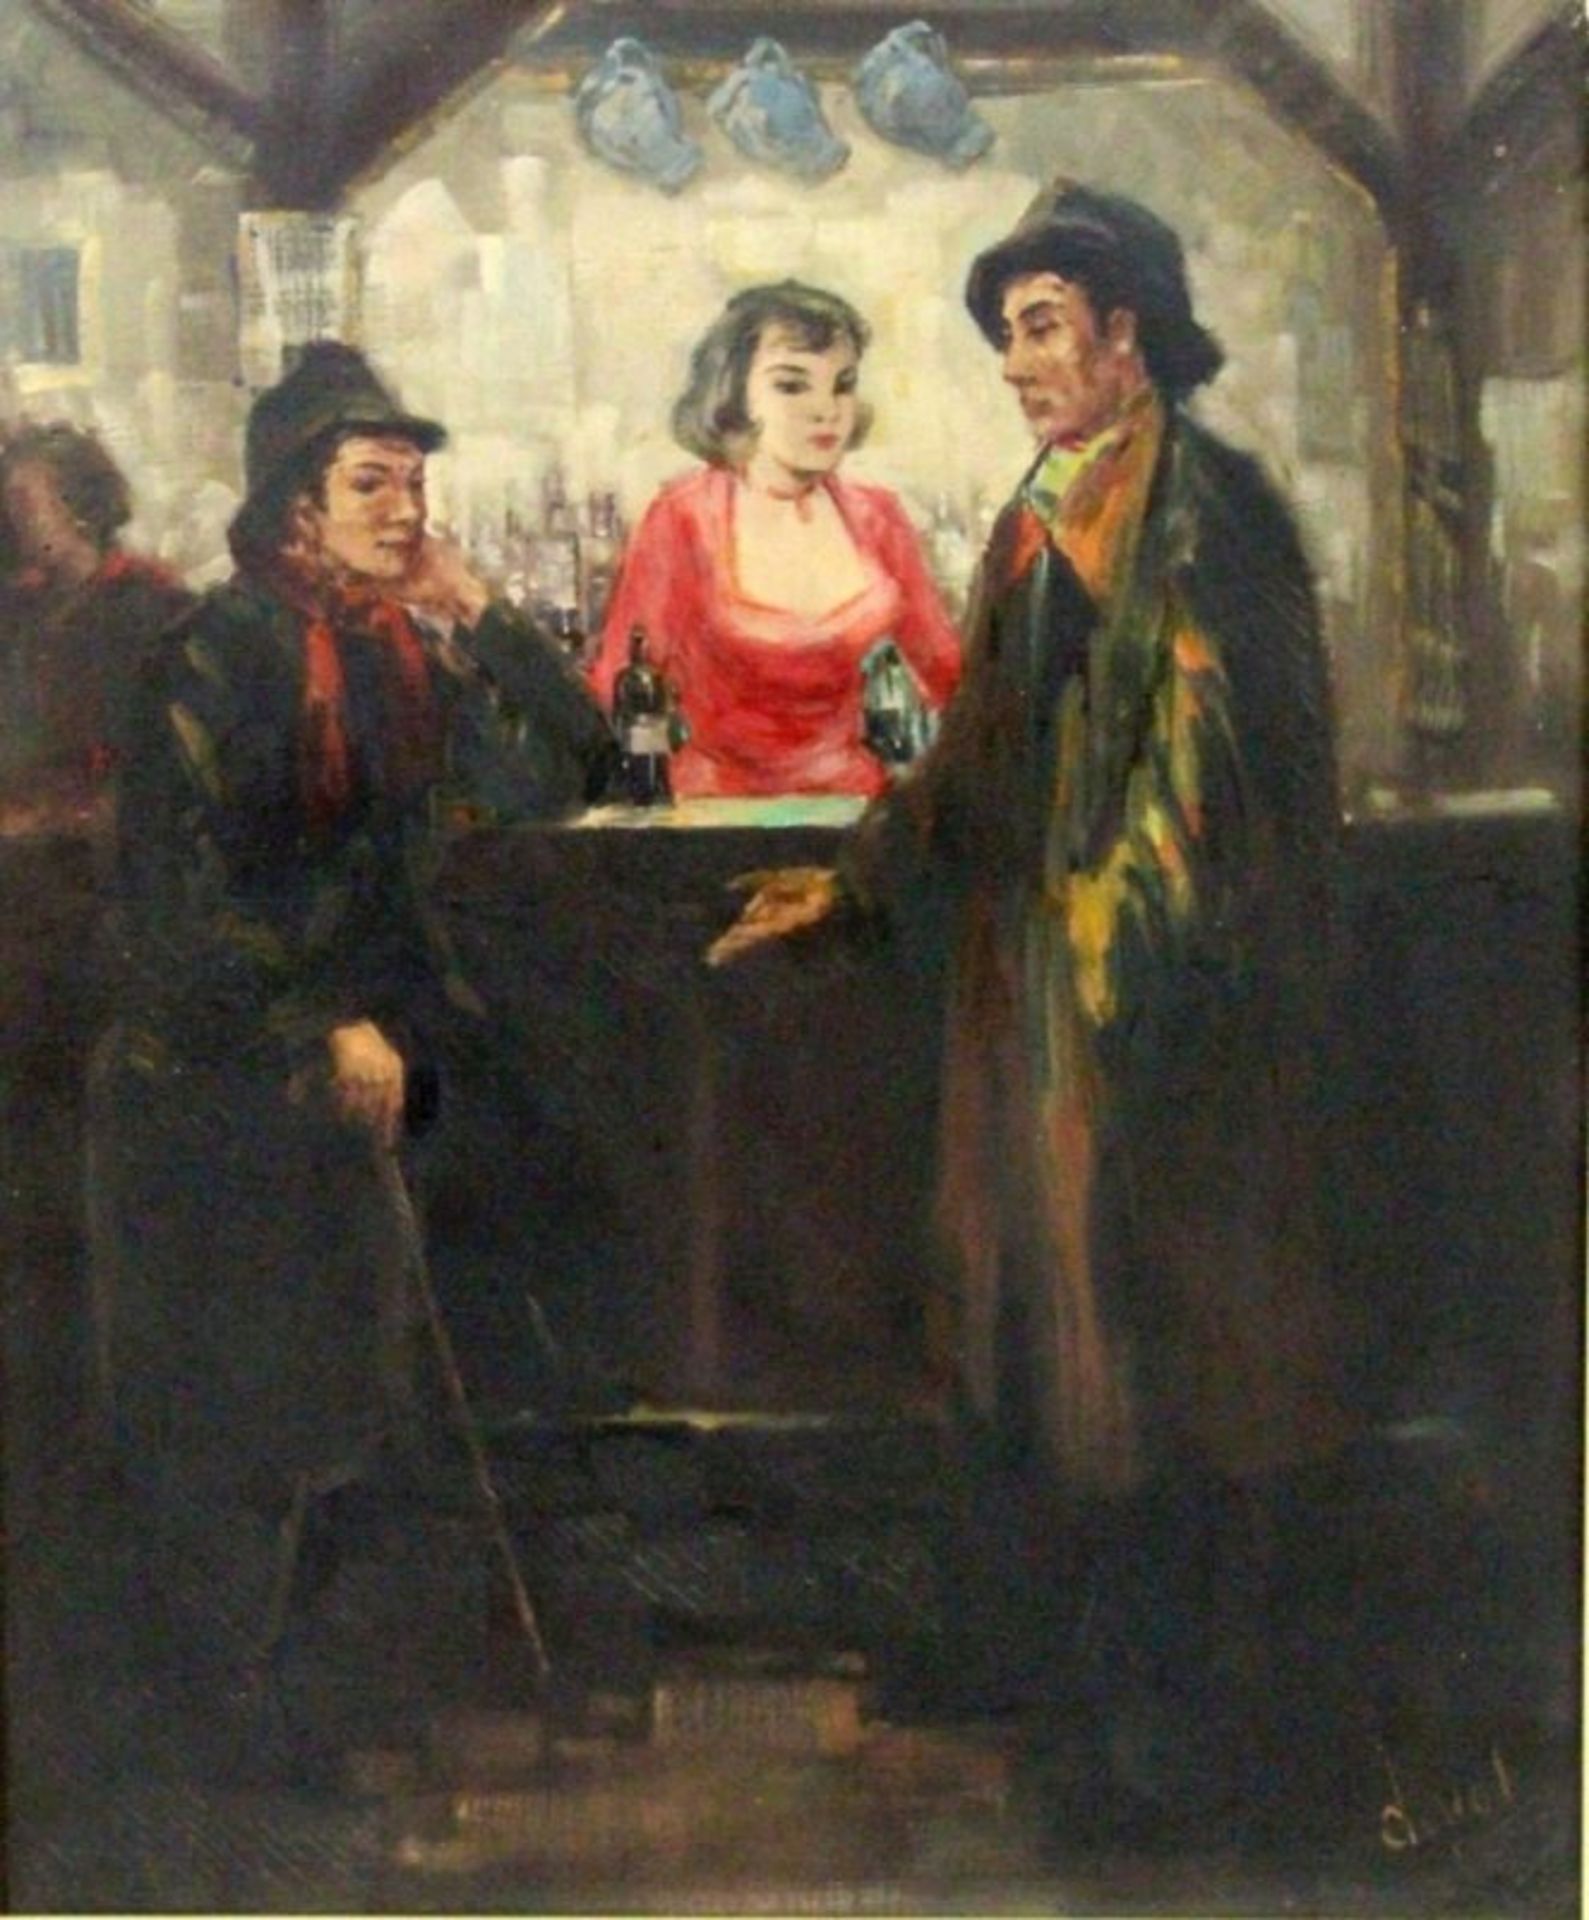 DUVALPariser Maler, 1950er/60er Jahre An der Bar. 2 Männer in Regenkleidung am Tresen mit Bardame.